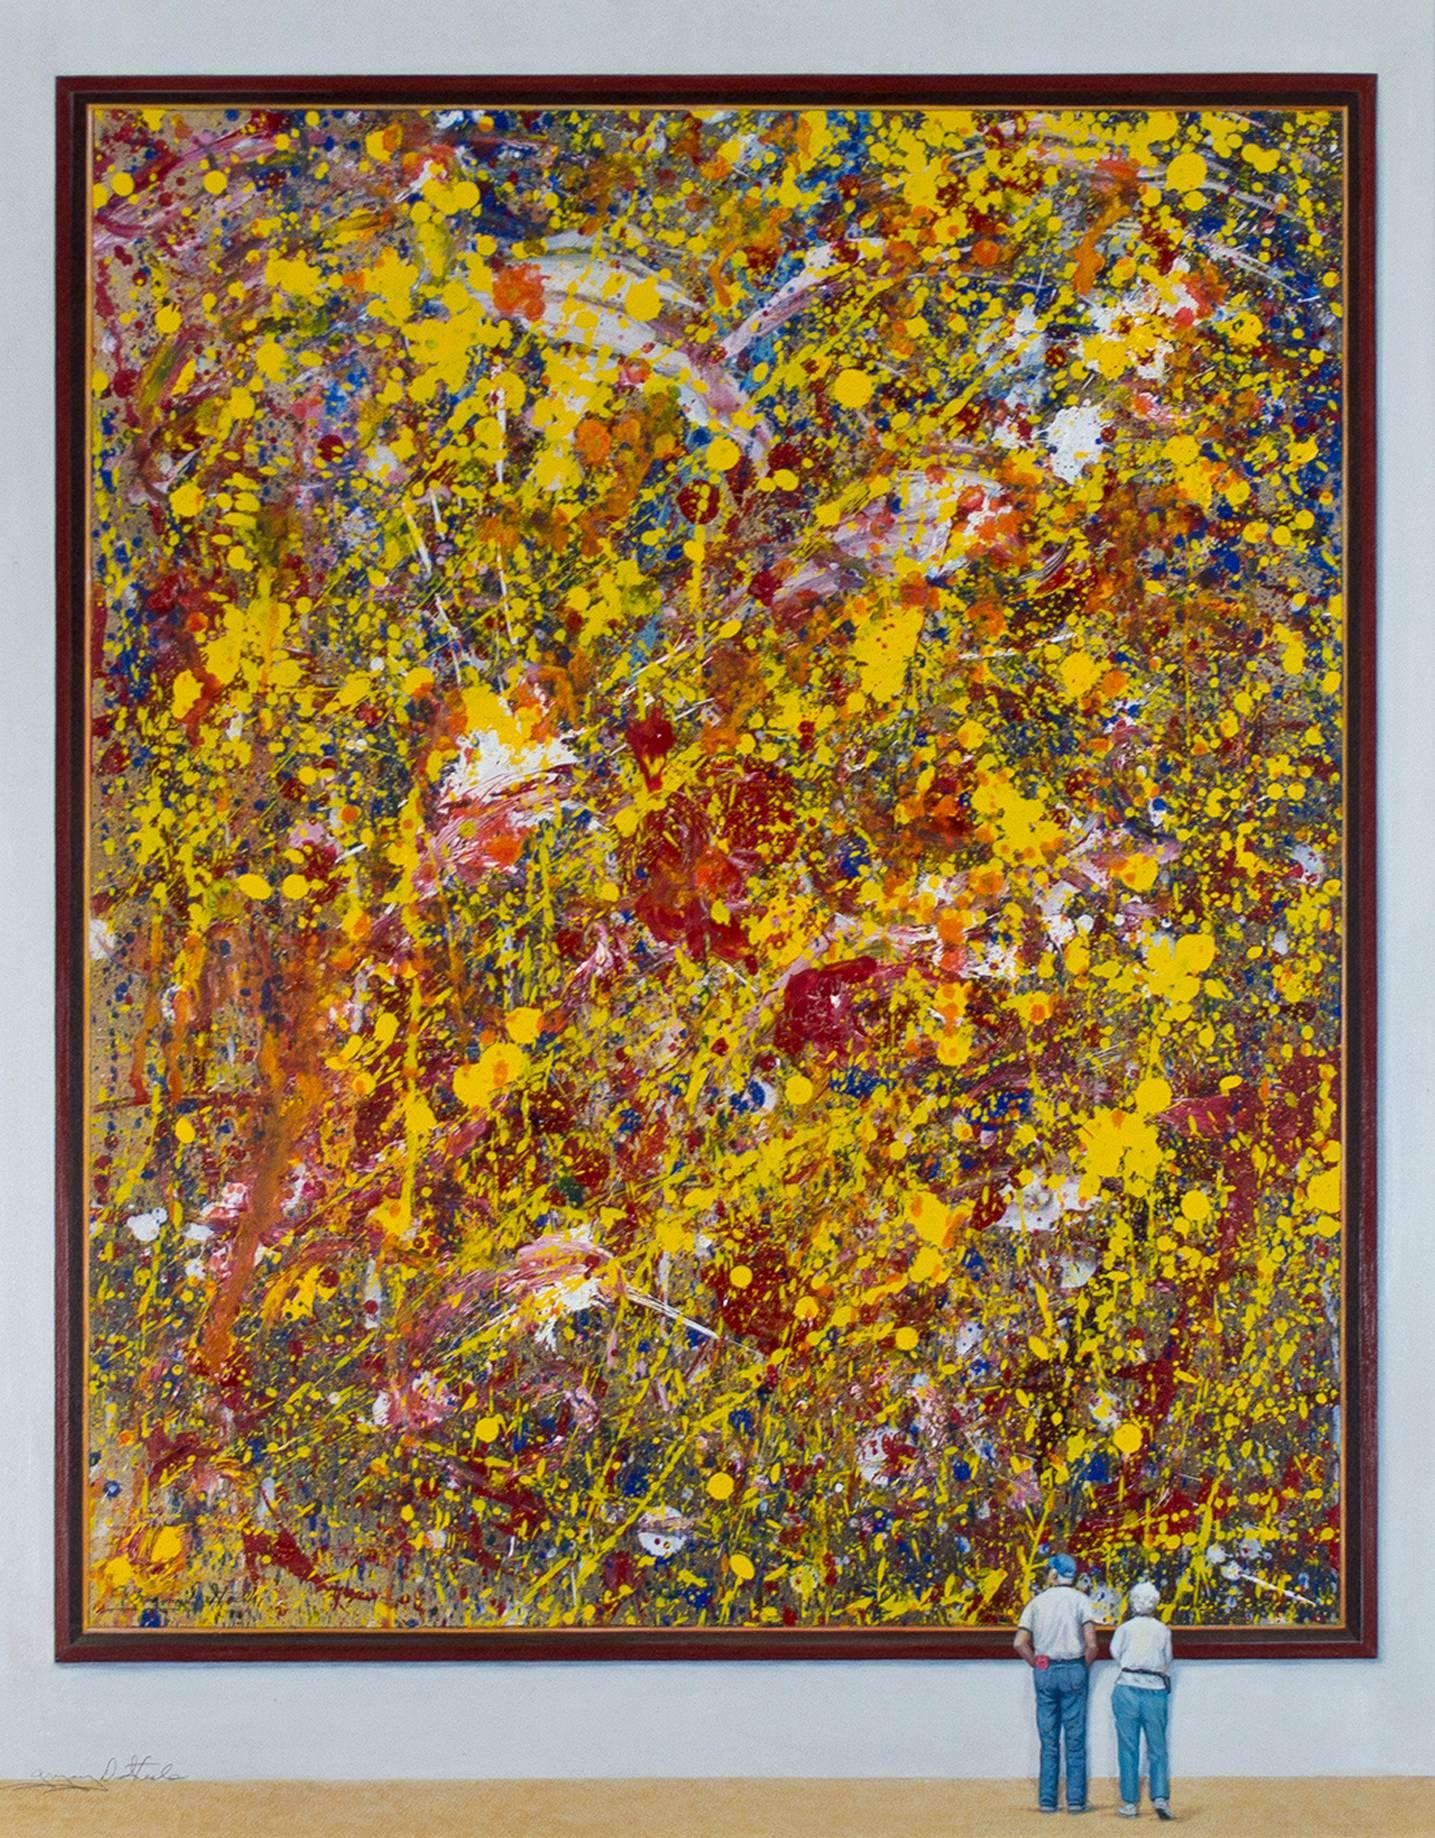 Abstract Painting Gregory Steele - Peinture à l'huile abstraite contemporaine colorée humoristique avec personnages jaune et rouge